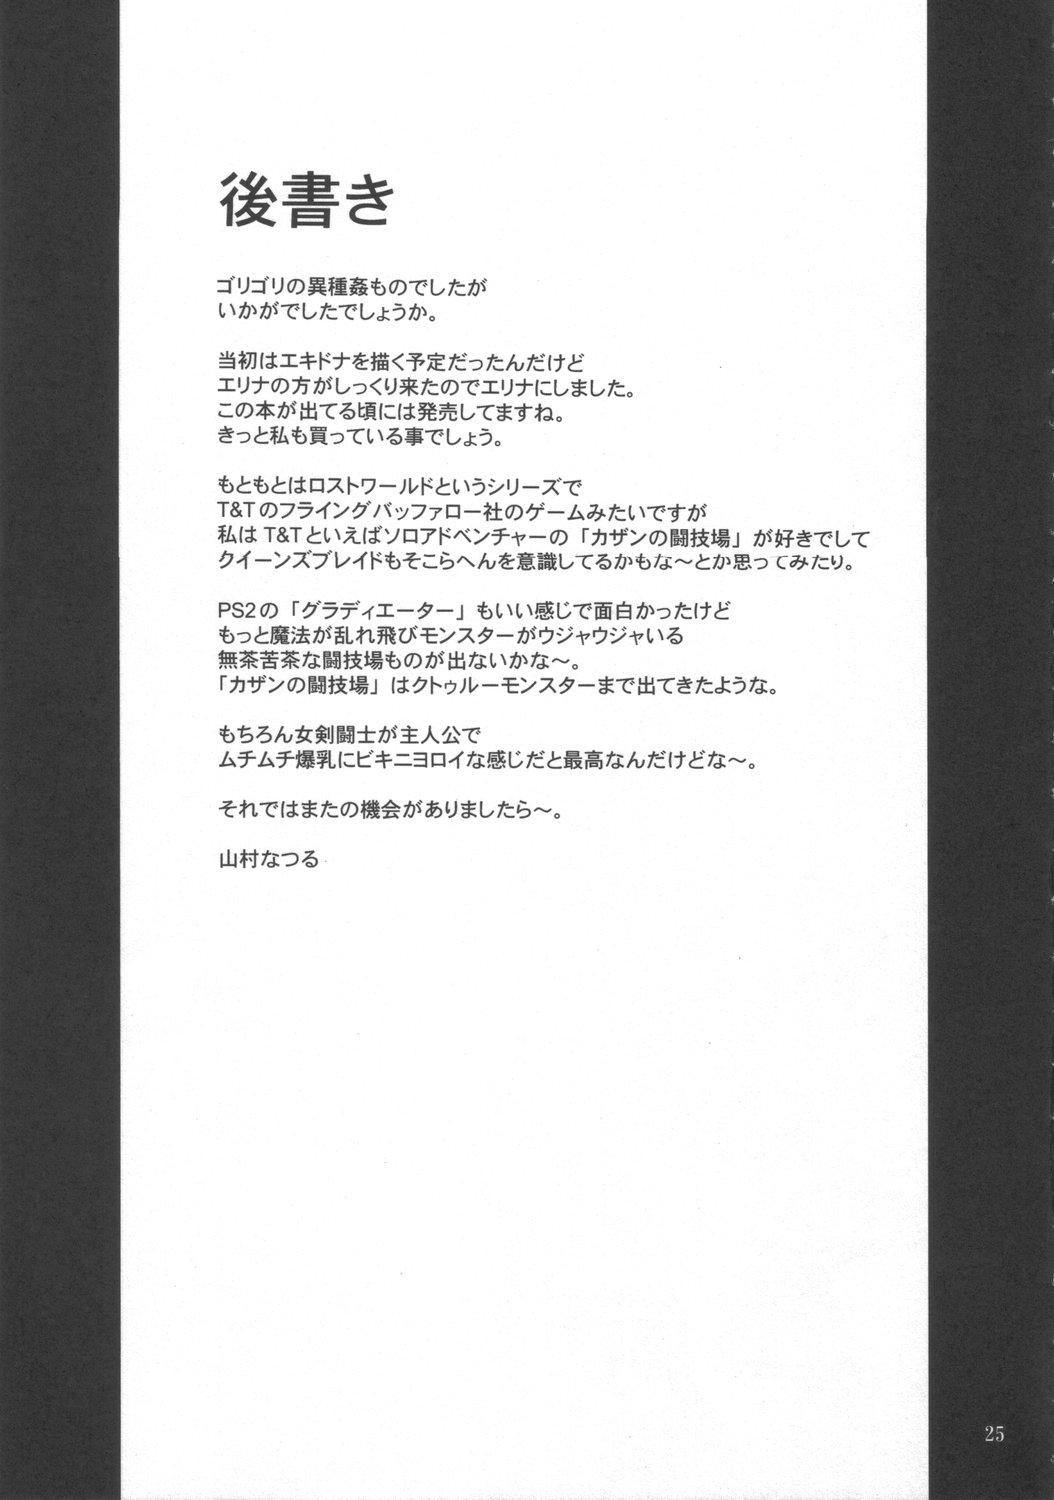 Gritona Injoku no Senshi Leina & Elina - Queens blade Chat - Page 24